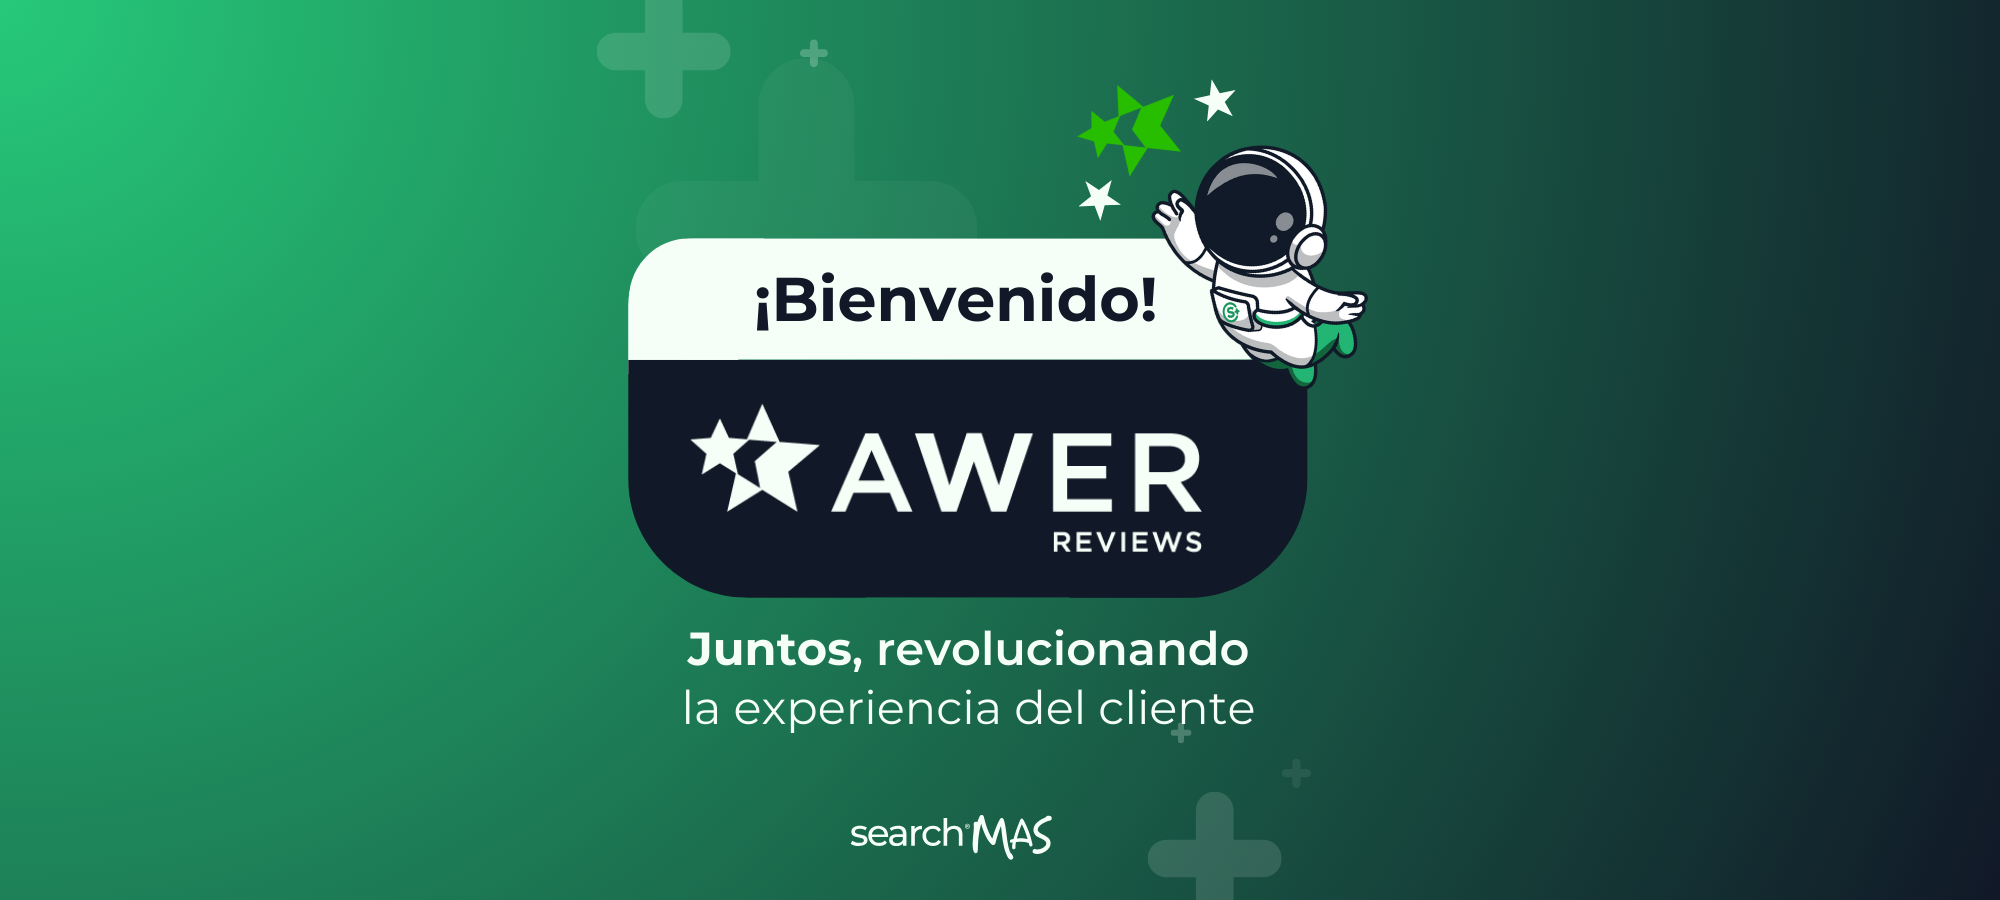 ¡Alianza explosiva! La potente alianza de SearchMAS con AWER Reviews